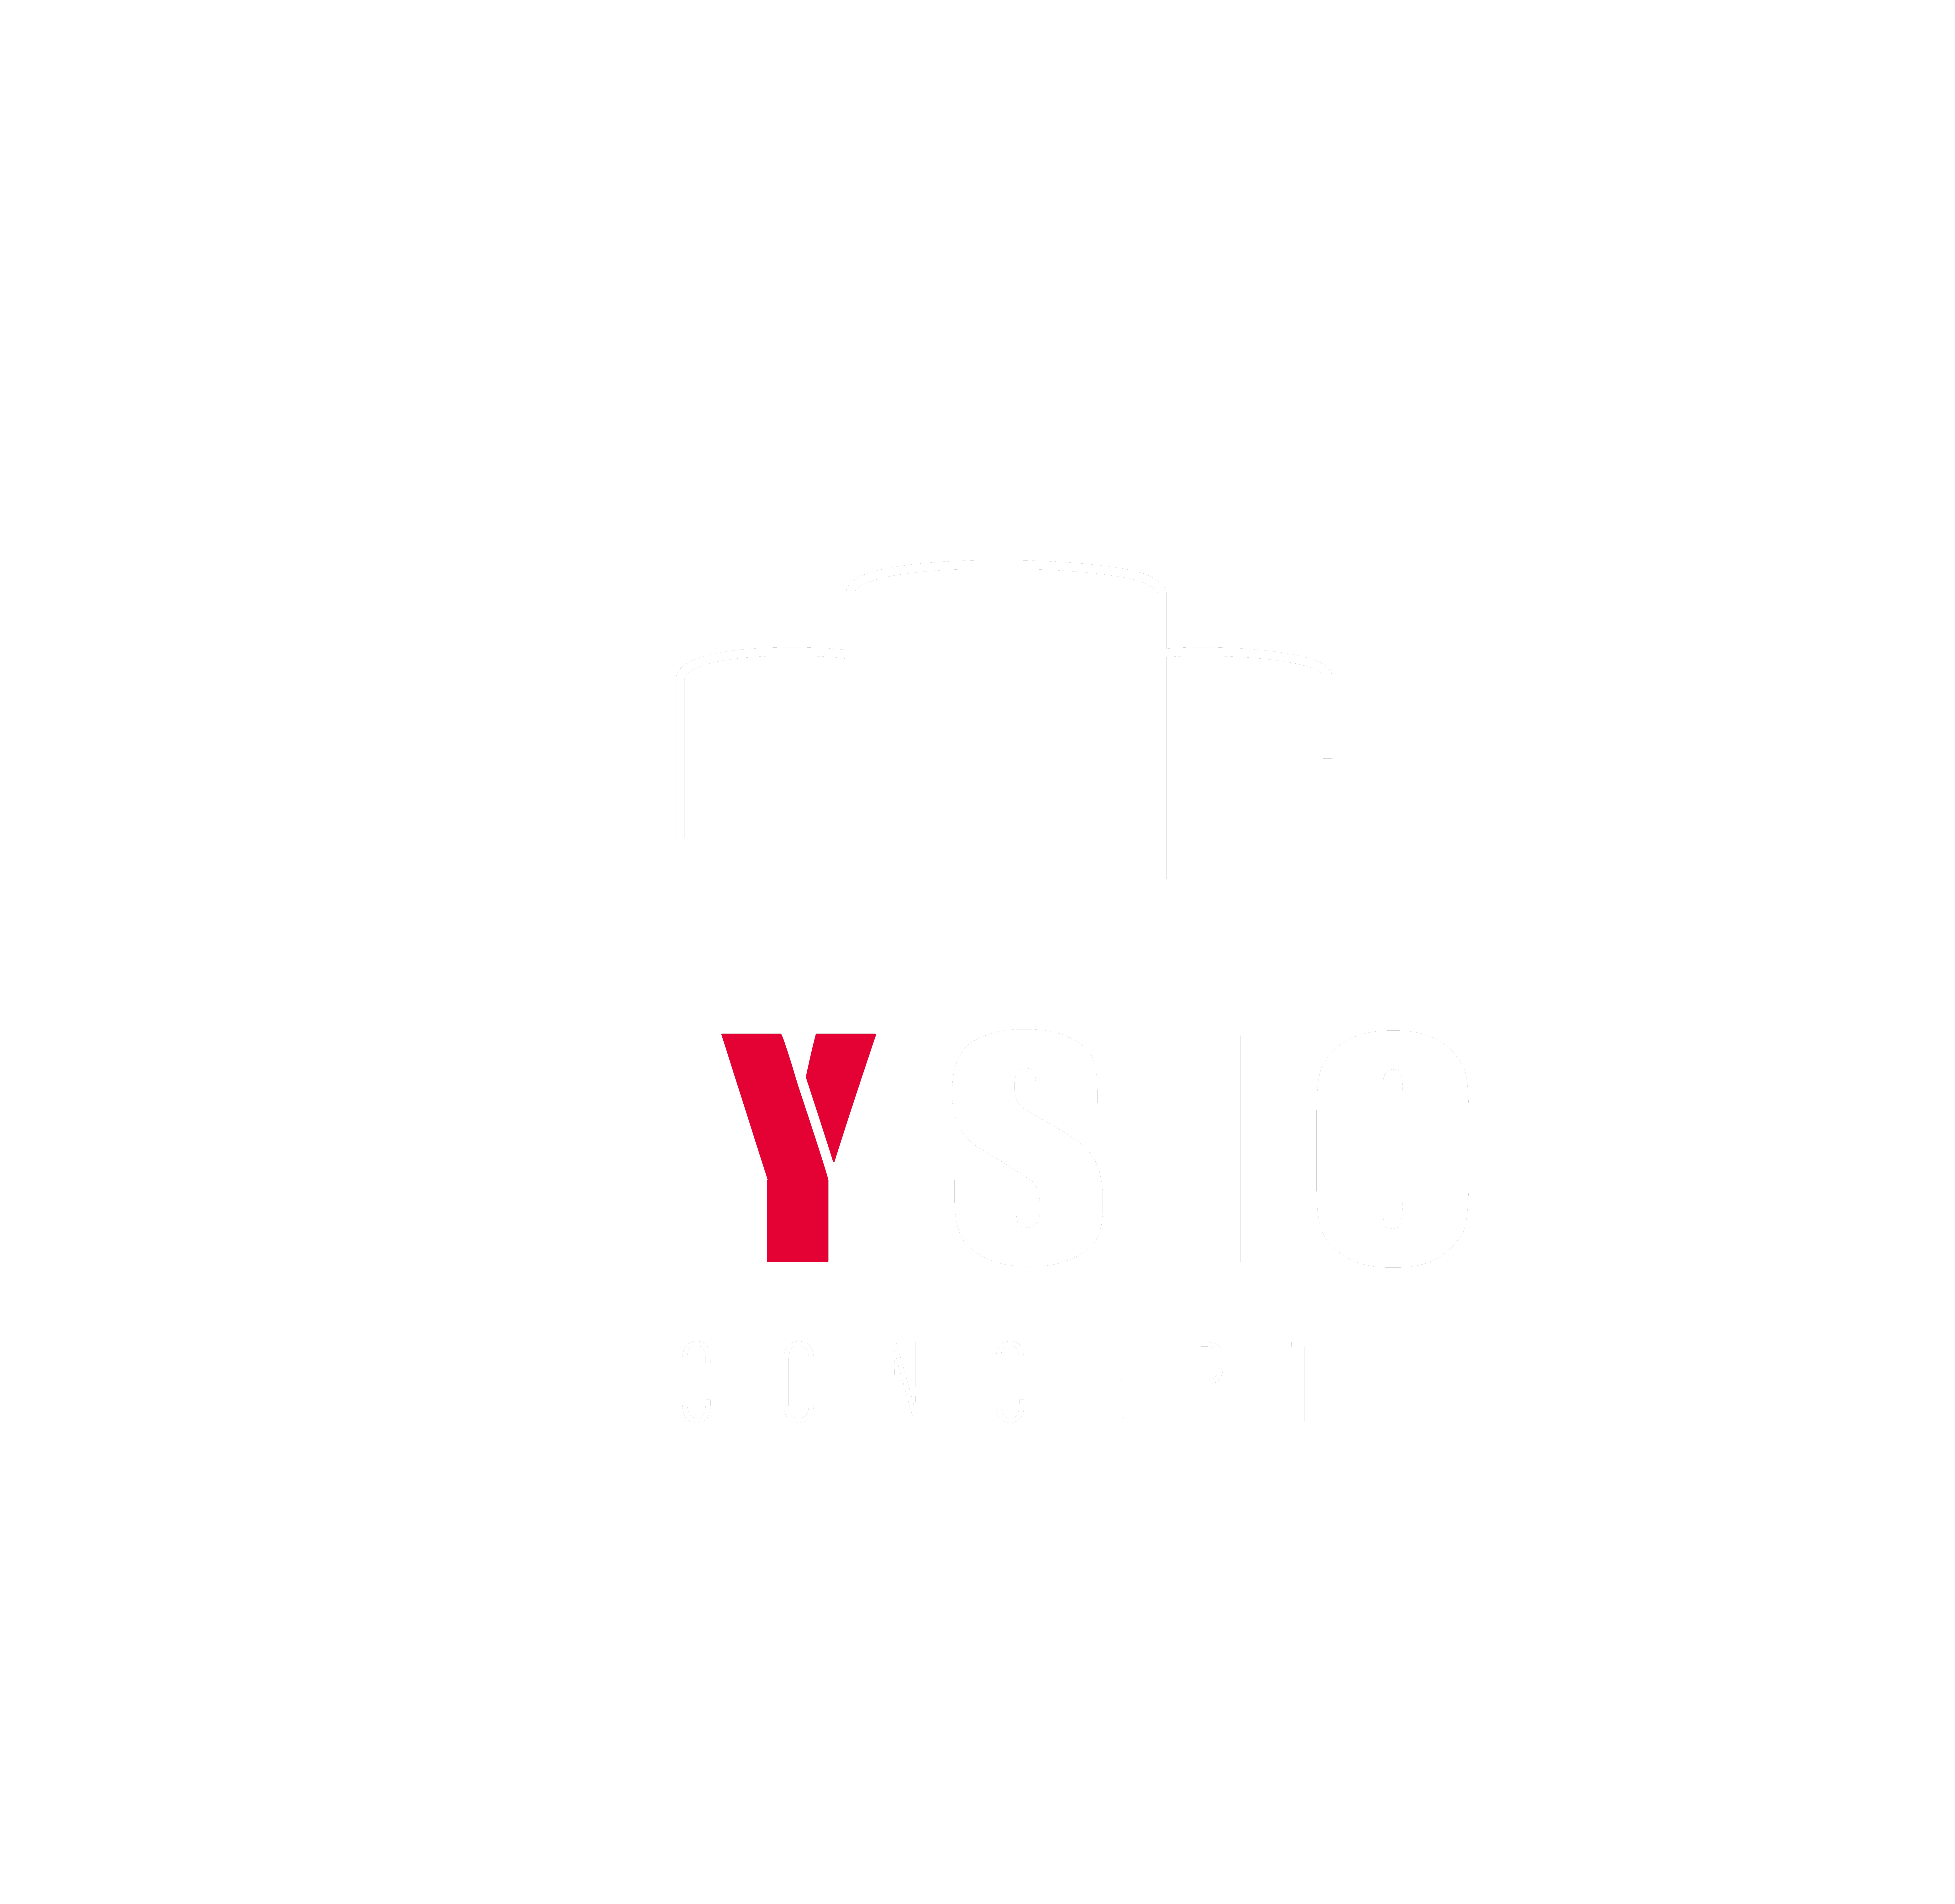 Fysioconcept